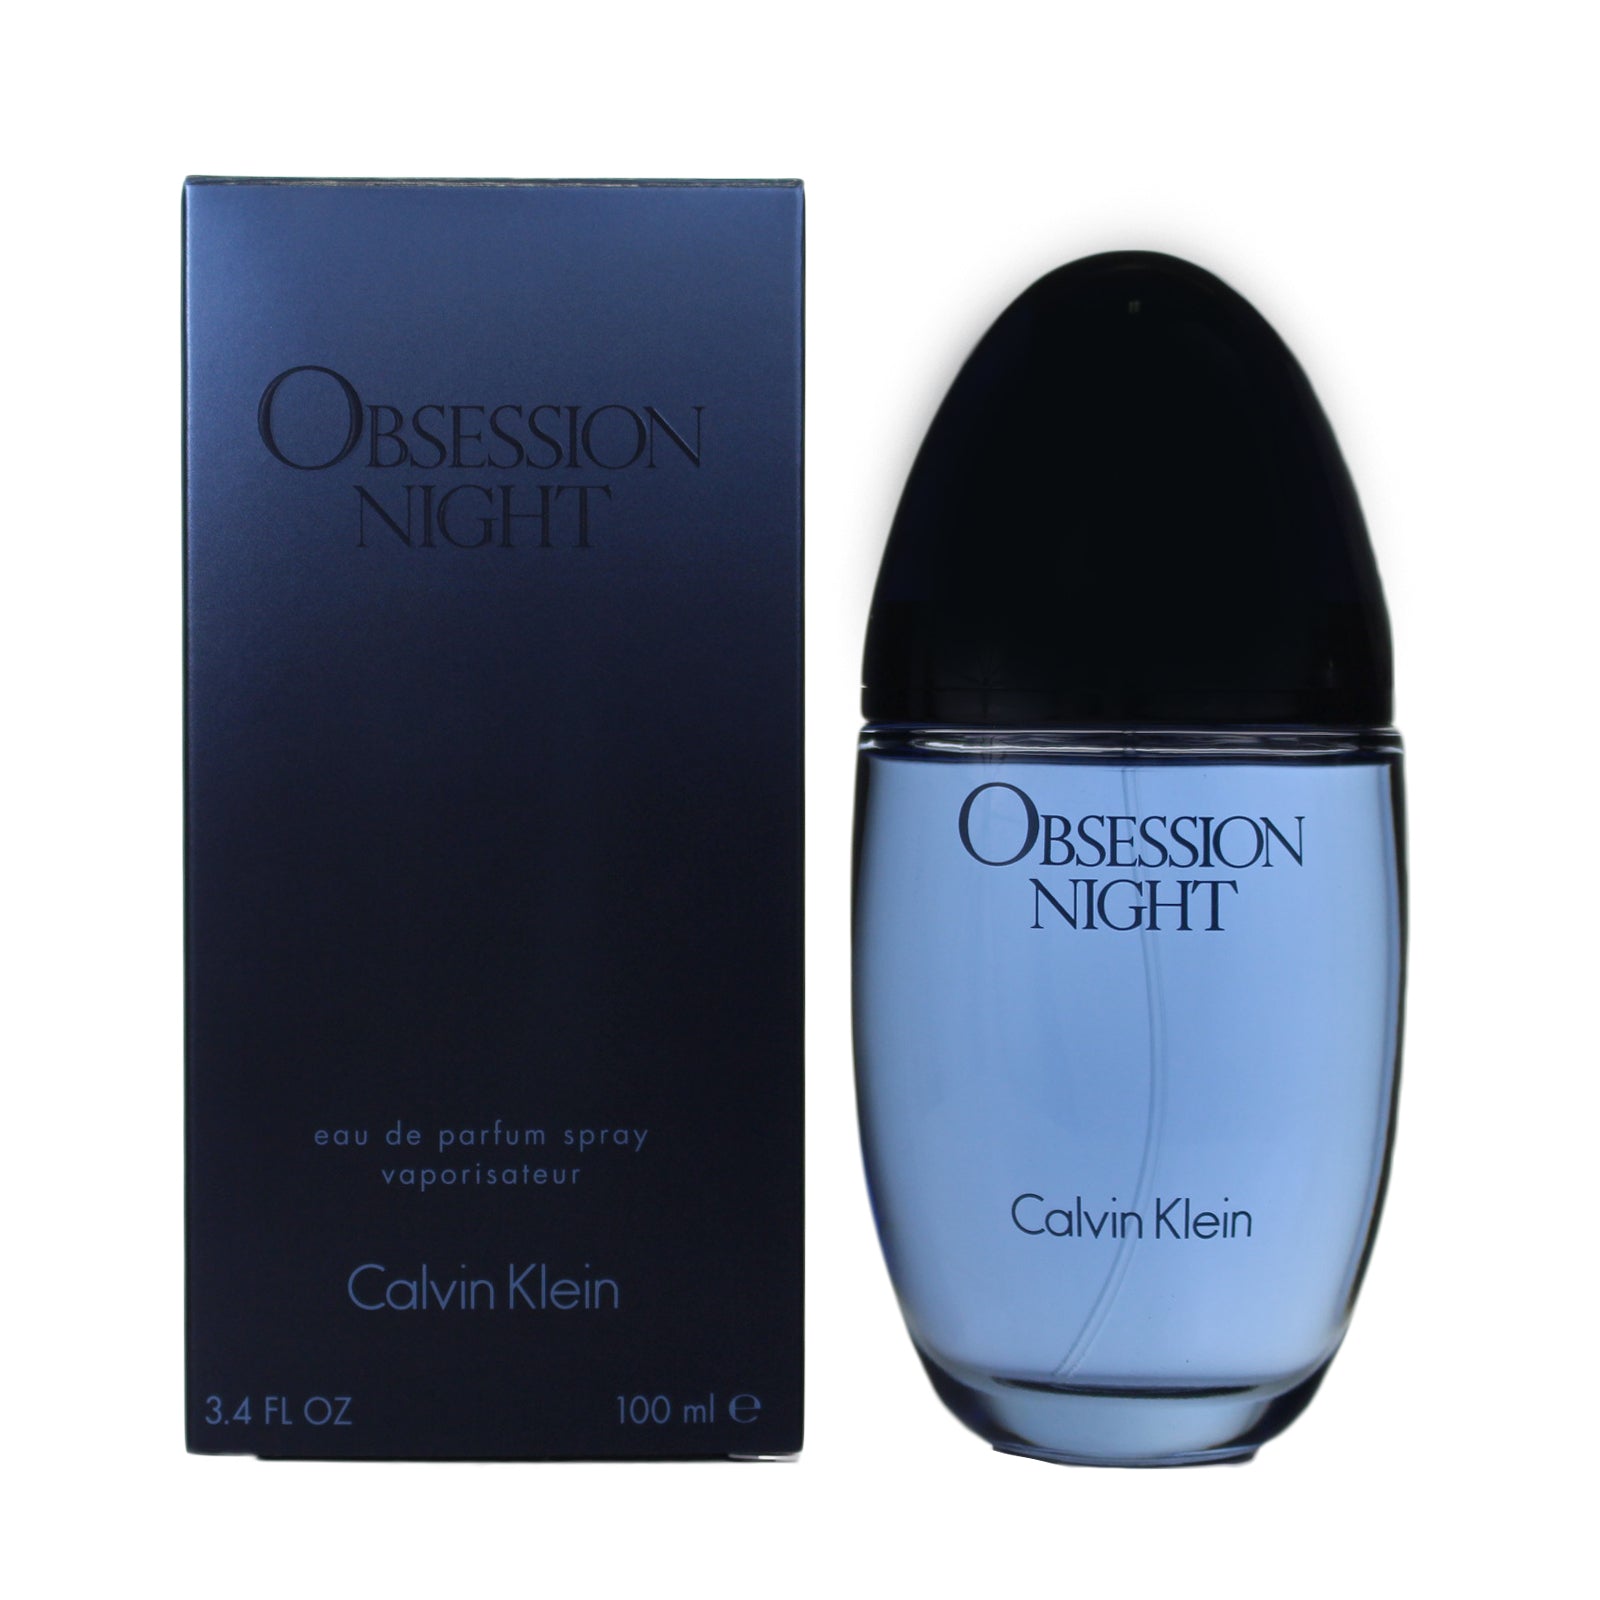 Obsession Night Perfume Eau De Parfum by Calvin Klein